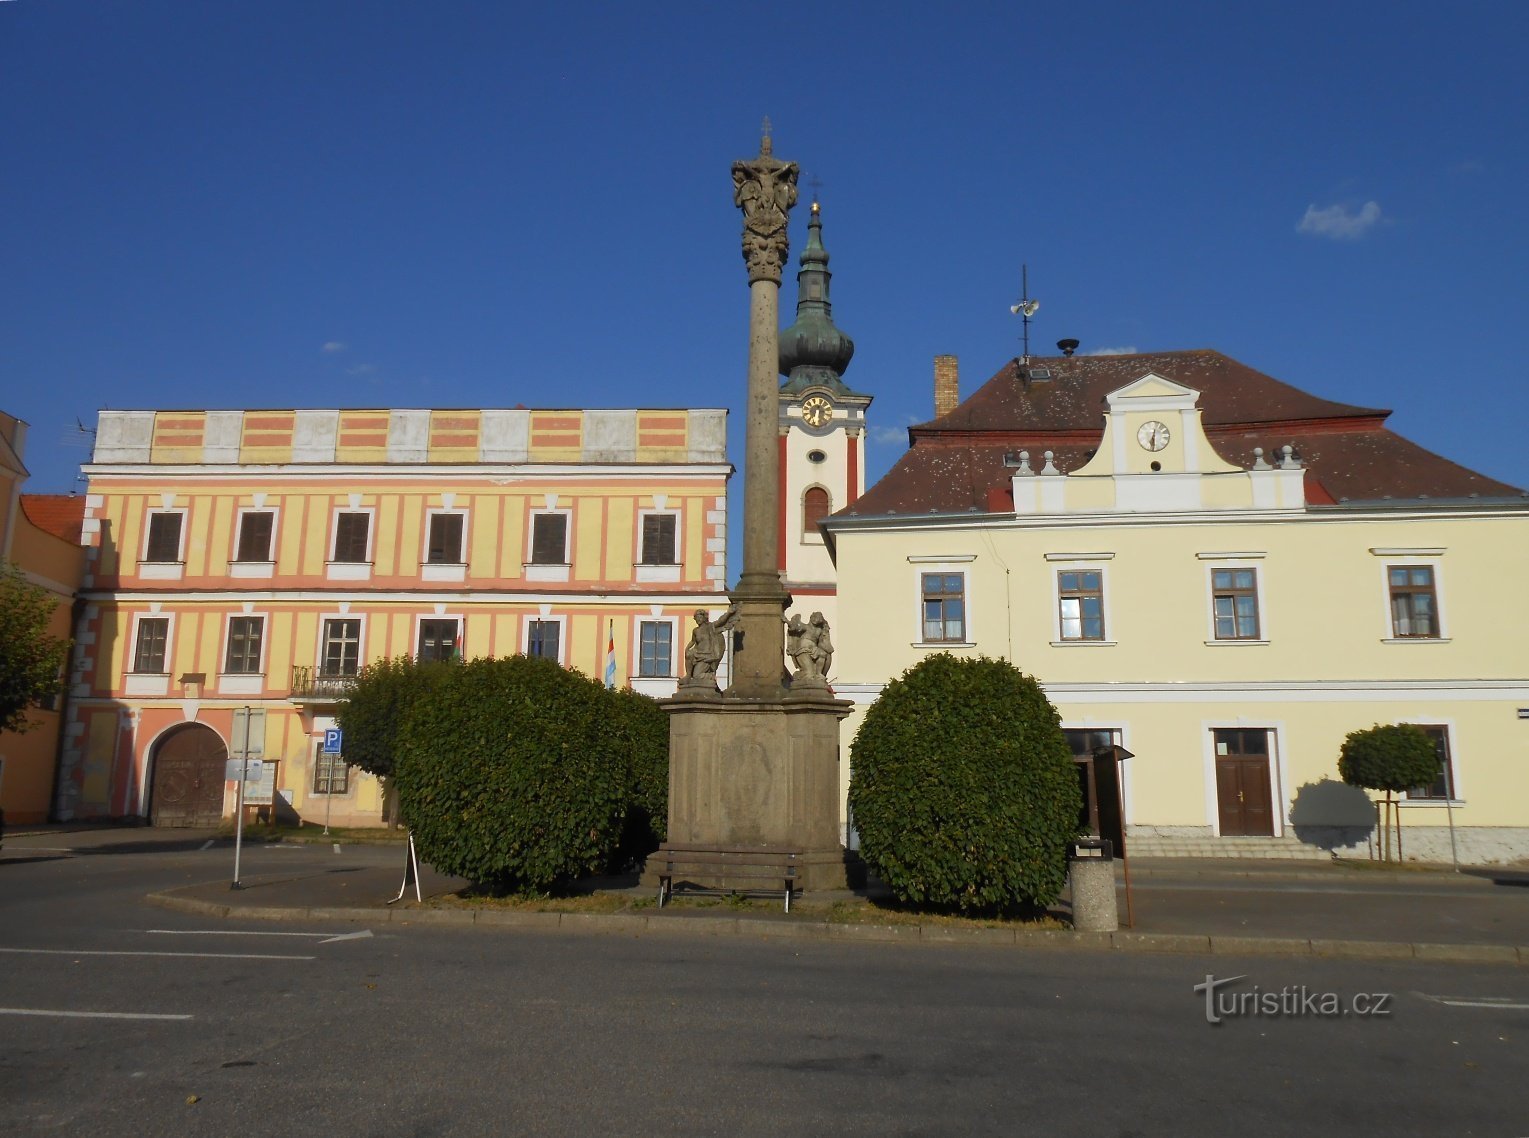 Nová Bystřice-Mírové náměstí-Nový zámek-column with a sculpture of the Holy Trinity